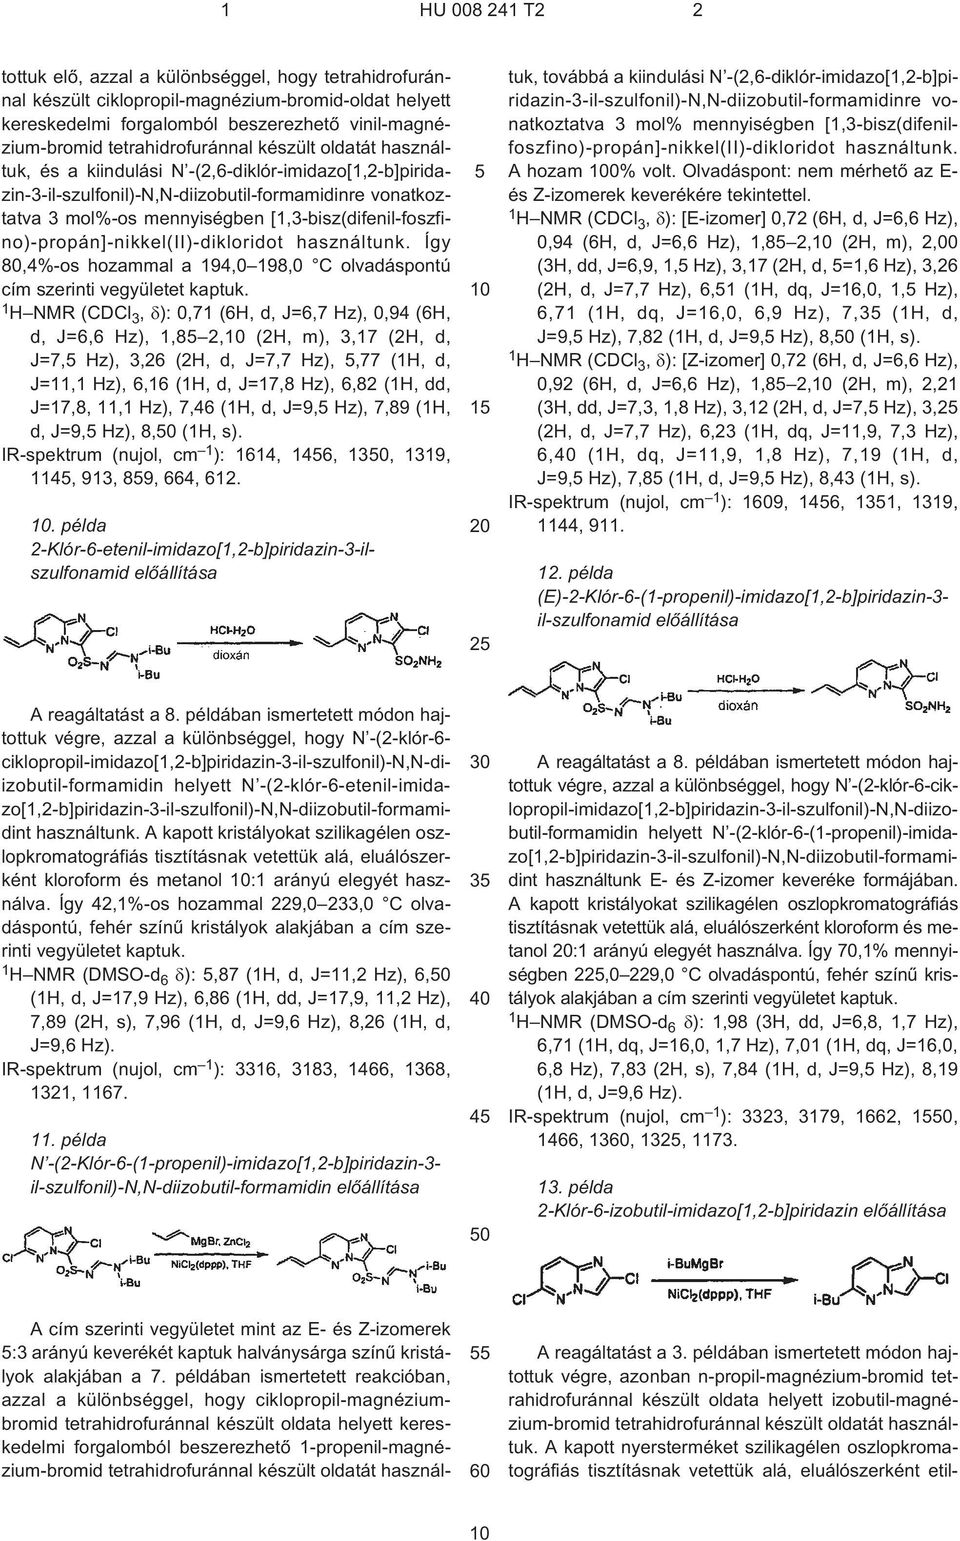 [13-bisz(difenil-foszfino)-propán]-nikkel(II)-dikloridot használtunk. Így 804%¹os hozammal a 19 1980 C olvadáspontú cím szerinti vegyületet kaptuk.